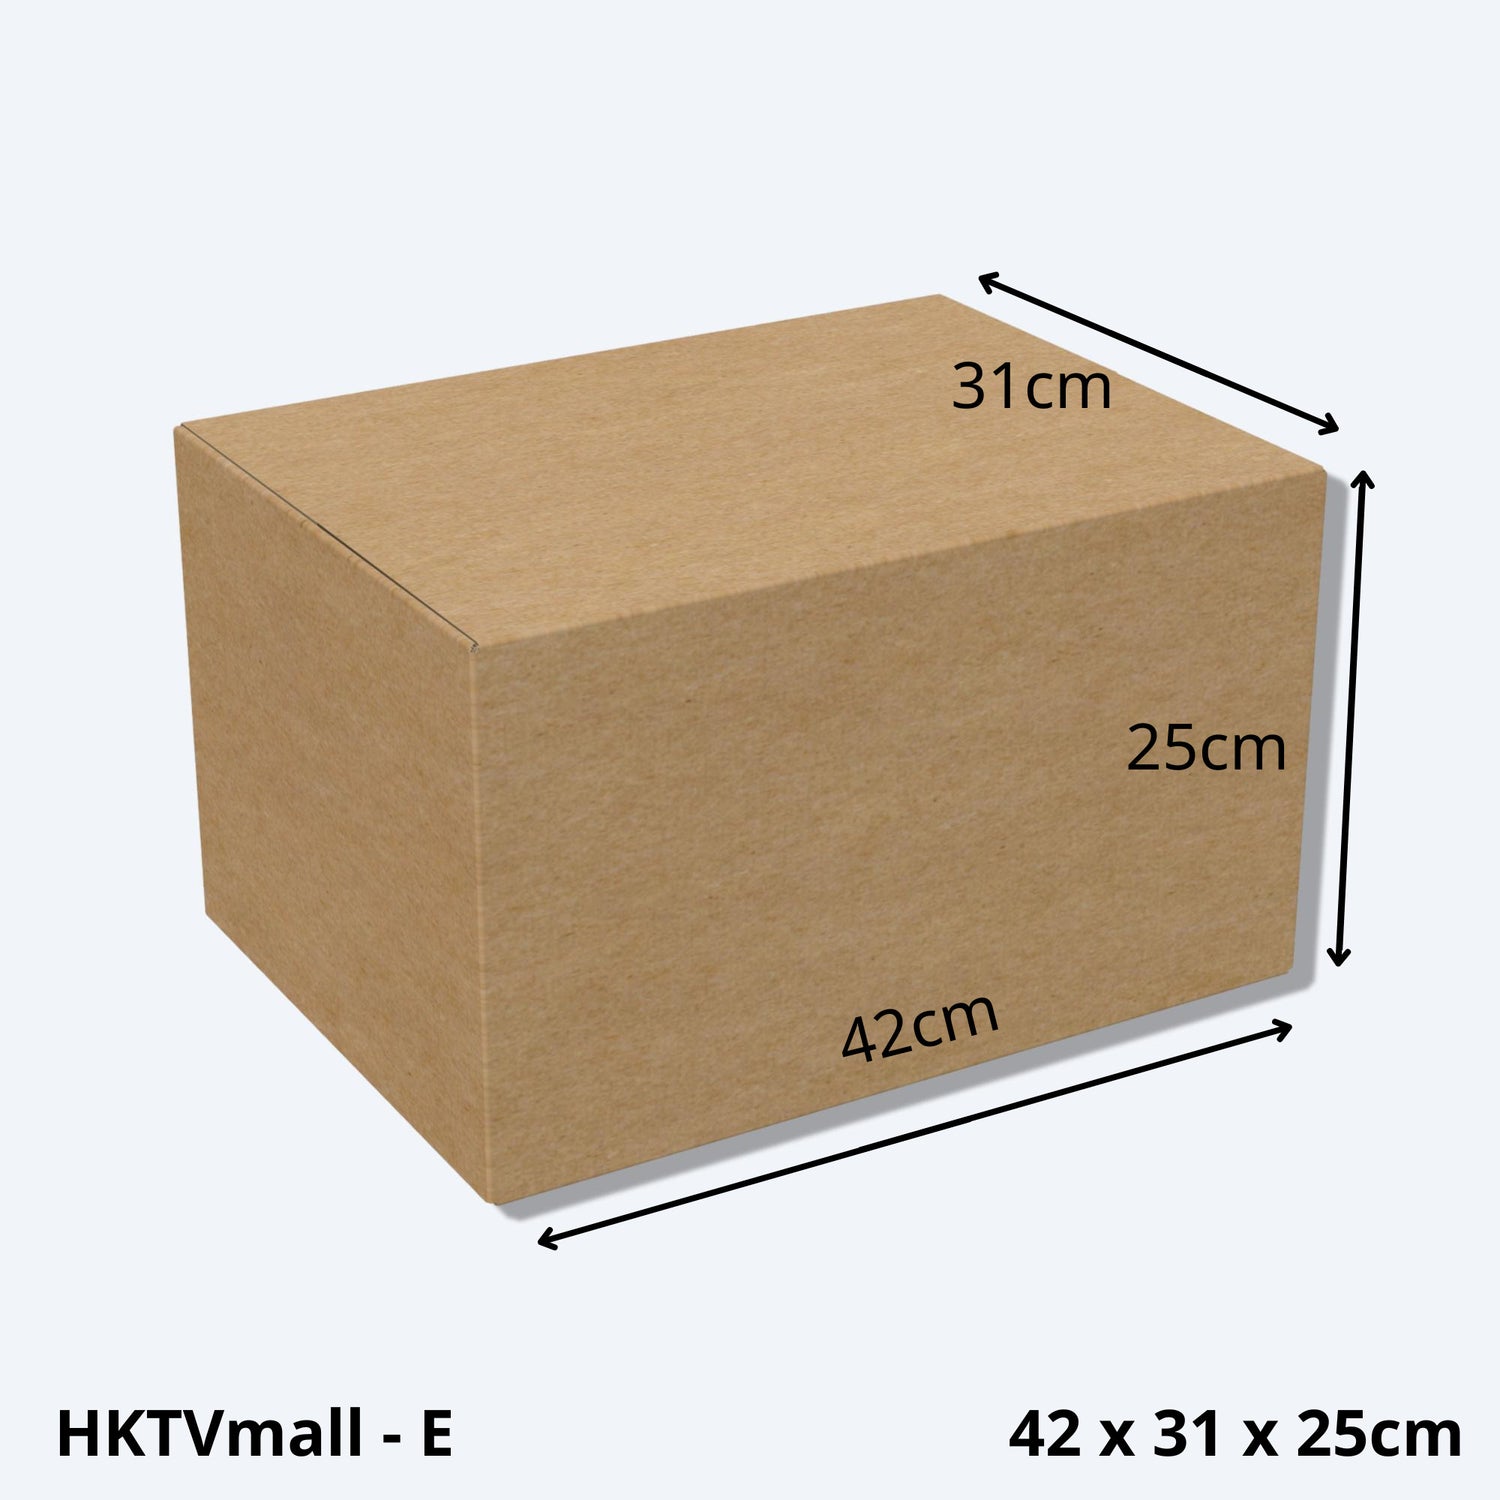 堅固的HKTVMALL尺寸E的紙箱尺寸圖，這款大型紙皮箱專為HKTV物流部設計，適用於HKTVmall商戶發貨時使用。